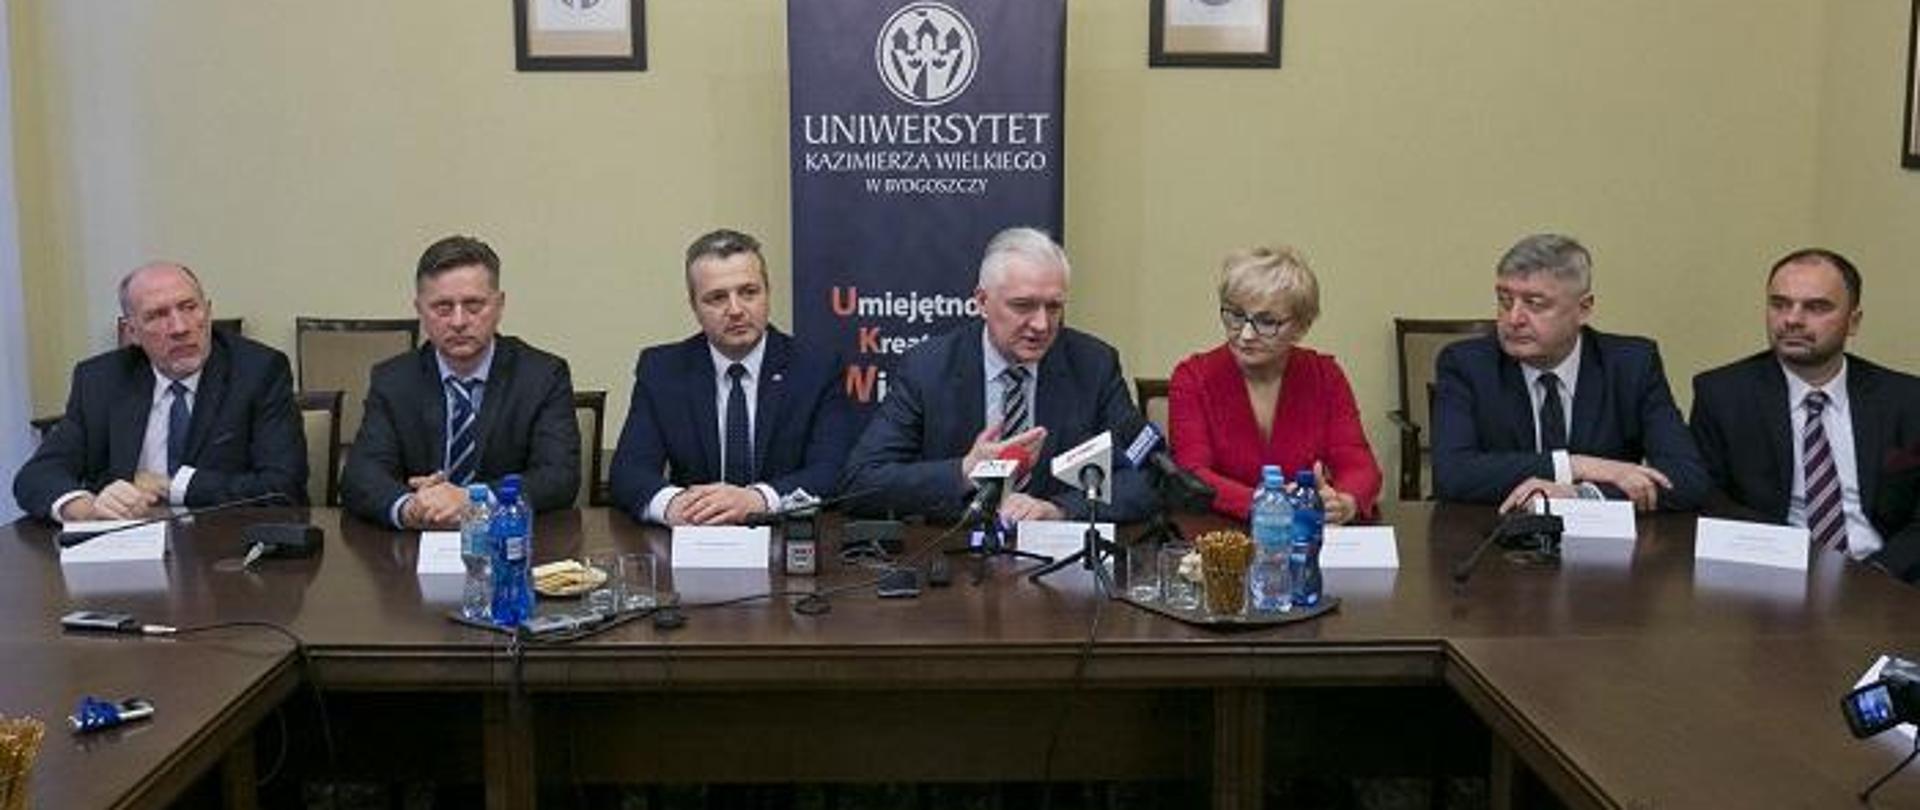 Minister Gowin i przedstawiciele władz uczelni siedzą na tle ściany z dyplomami i plakatem UKW